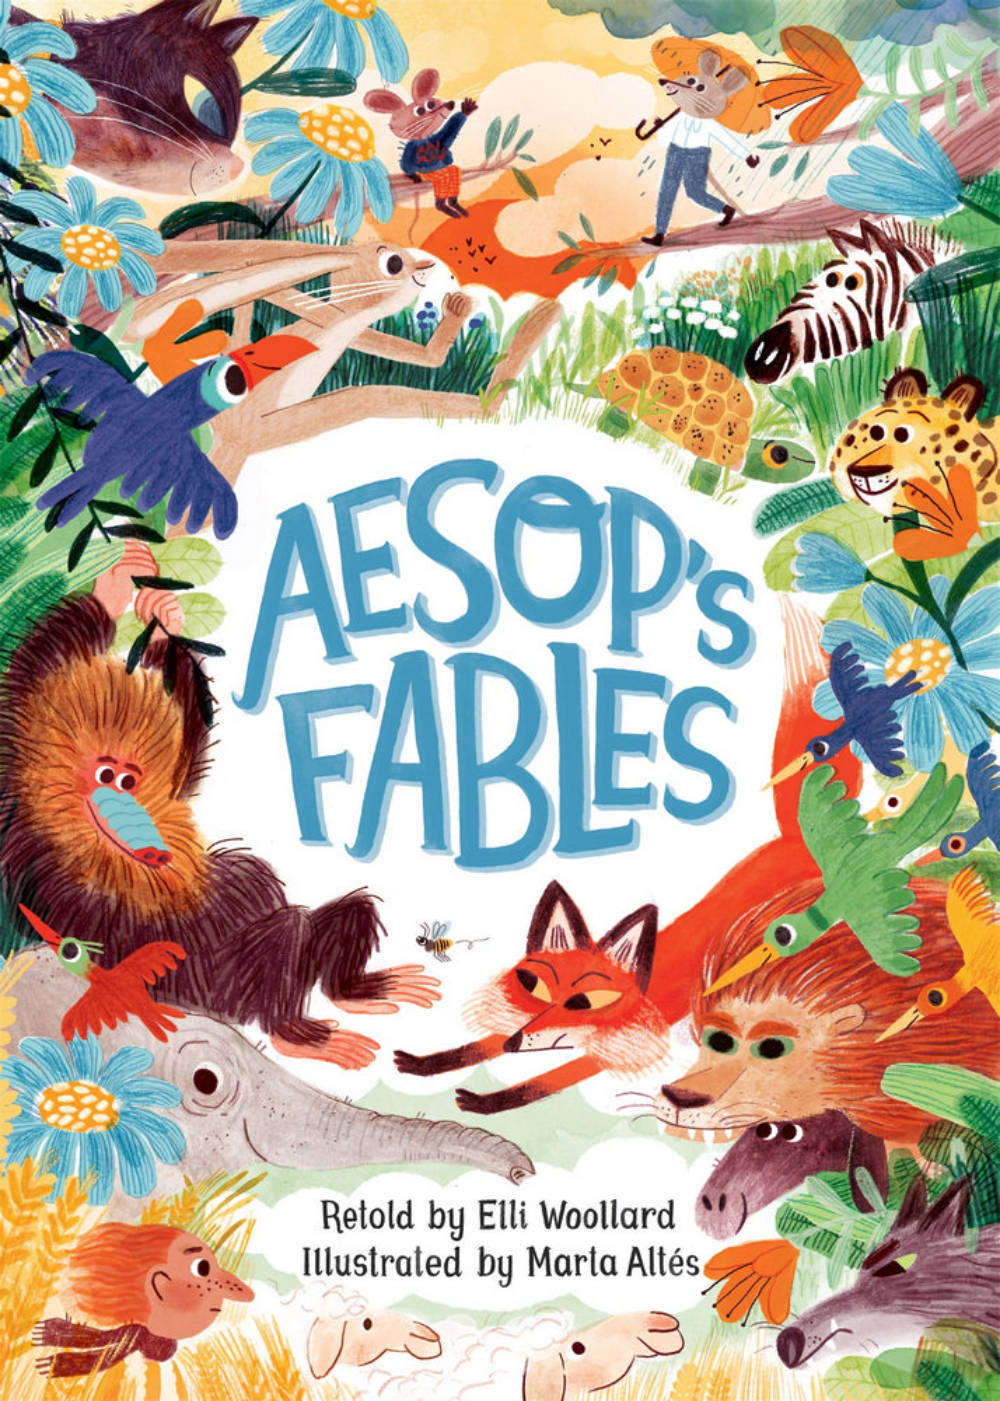 Aesop’s Fables, Retold by Elli Woollard